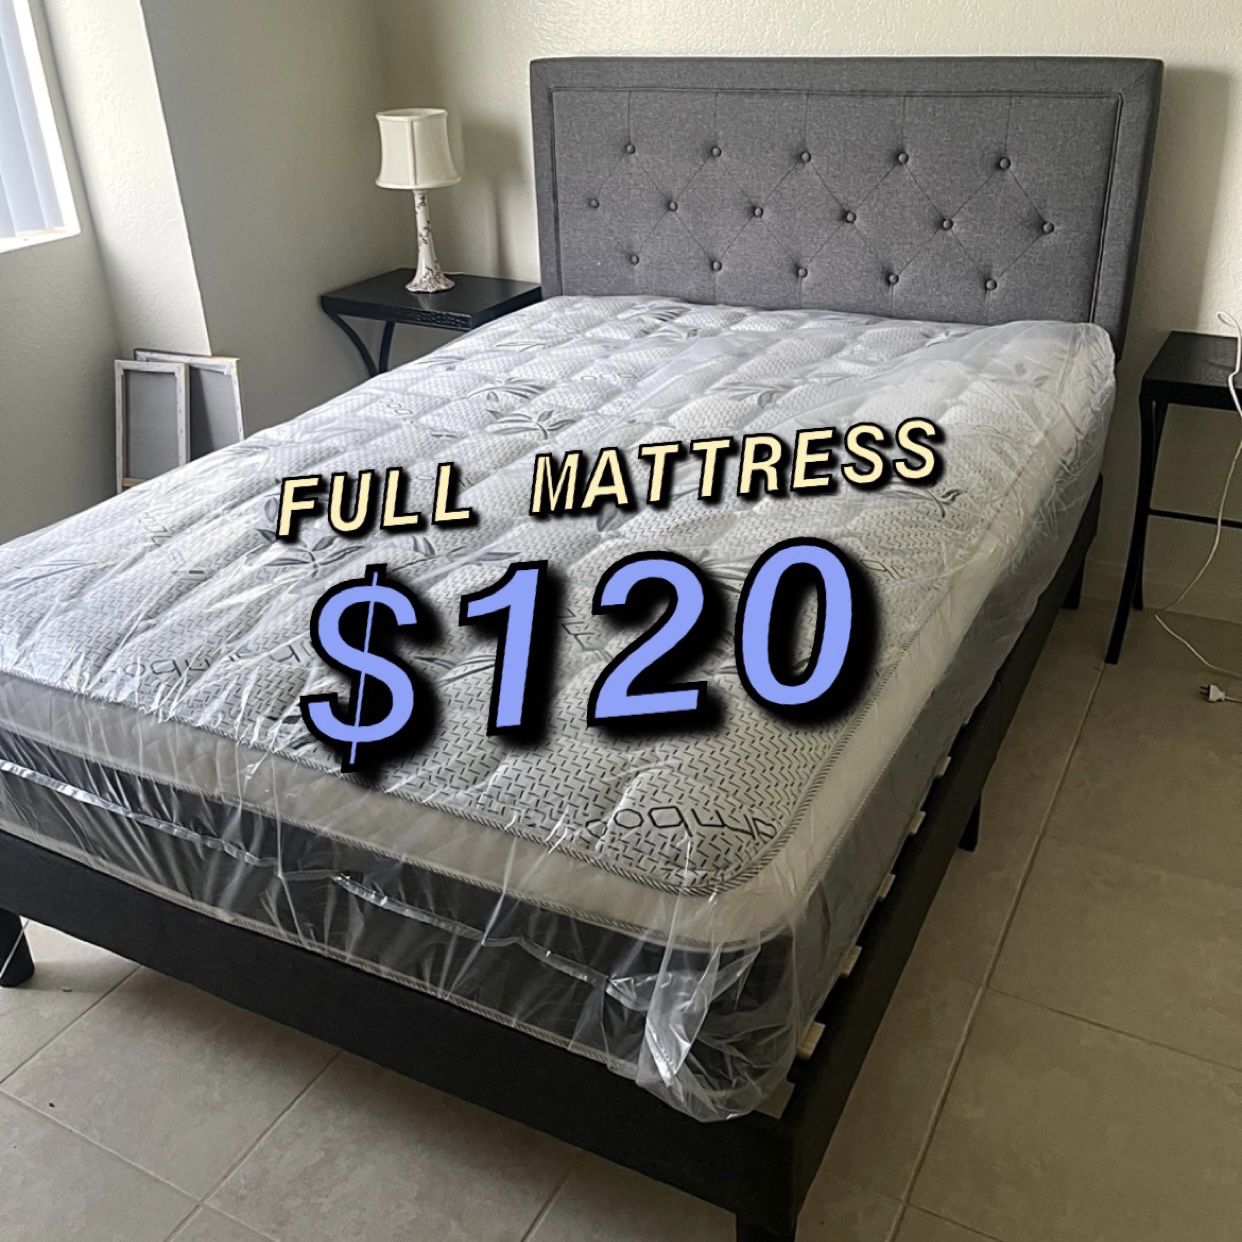 Full Mattress For $120